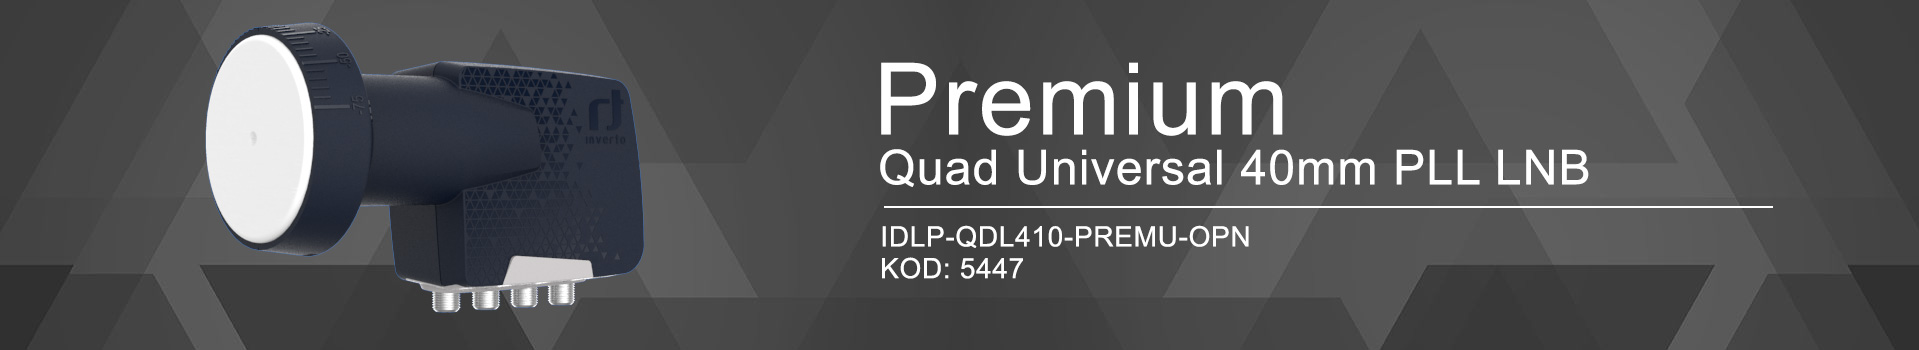 konwerter satelitarny Inverto Quad Premium IDLP-QDL410-PREMU-OPN